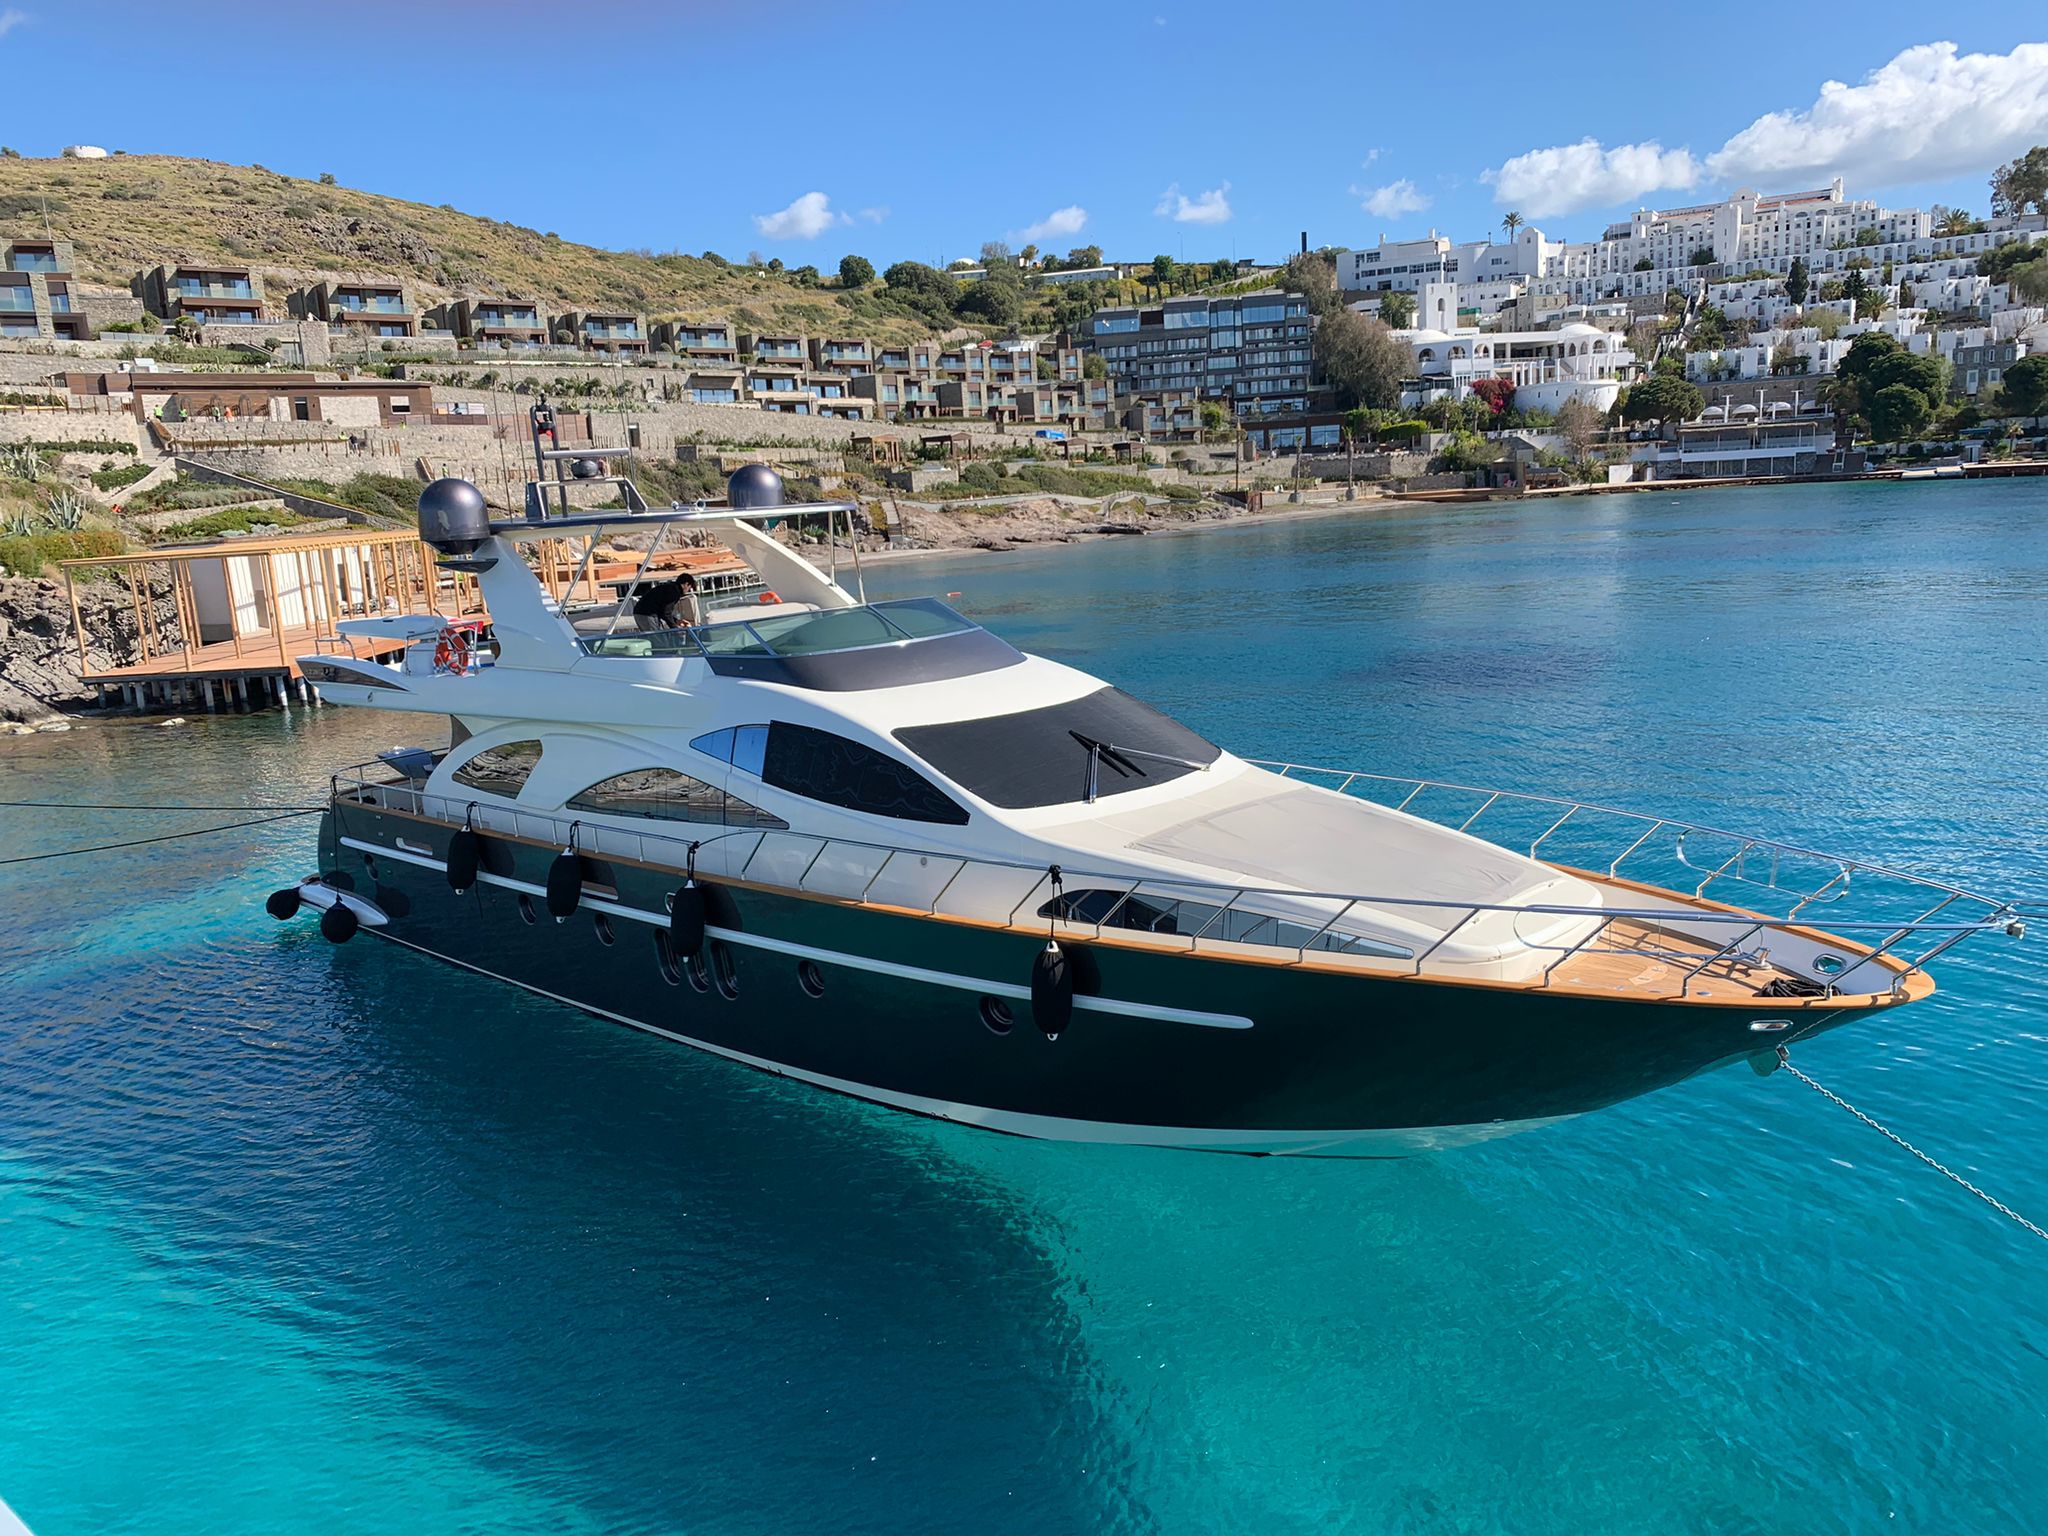 Azimut 80 - Yacht Charter Mykonos & Boat hire in Greece Cyclades Islands Mykonos Mykonos 2